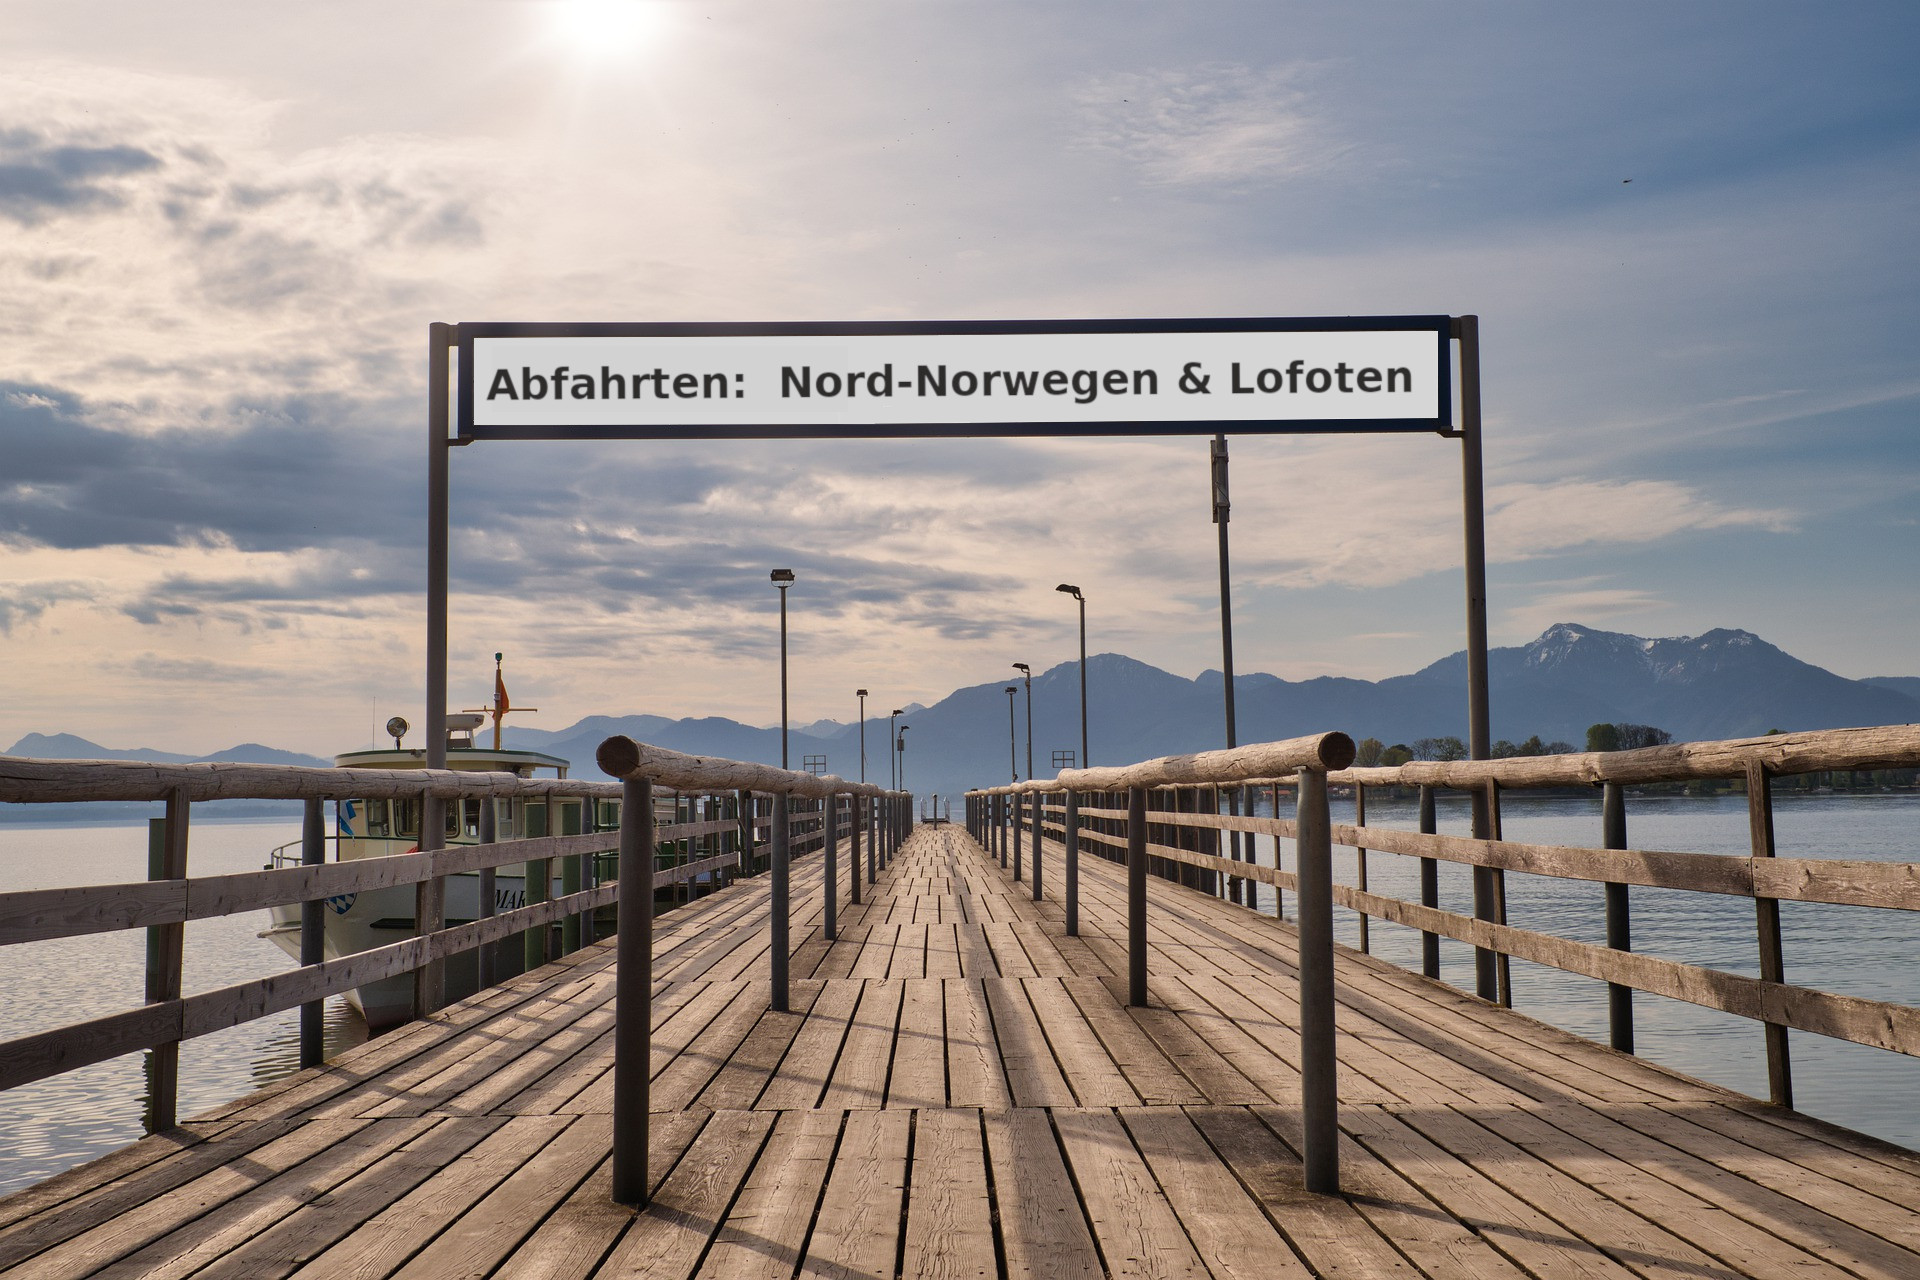 Abfahrten Nord-Norwegen & Lofoten